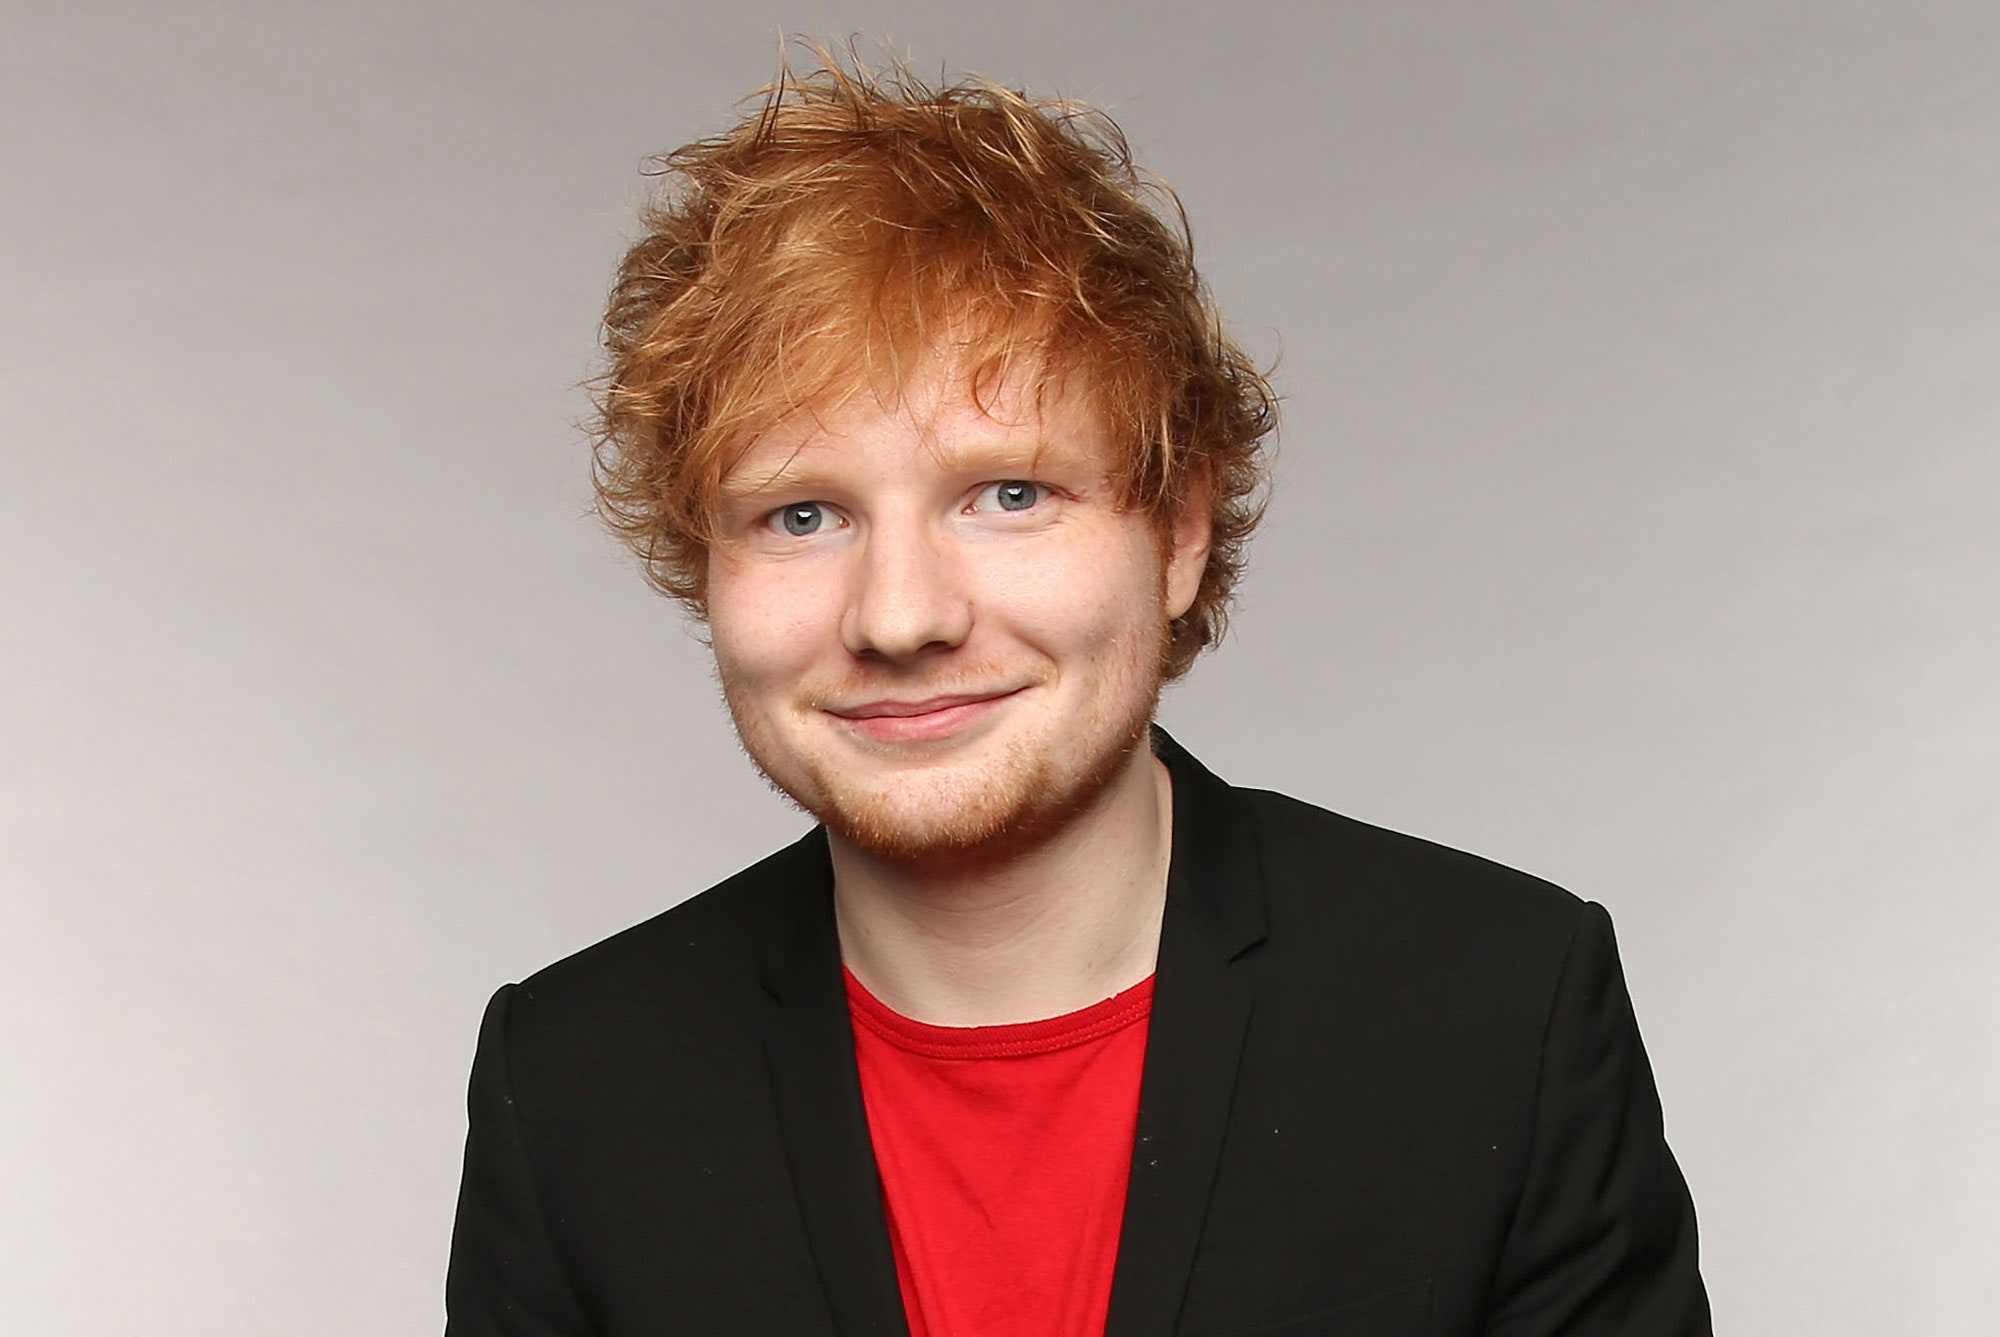 Tras reclamos por presuntos plagios, Ed Sheeran confiesa que ahora filma sus procesos de composición